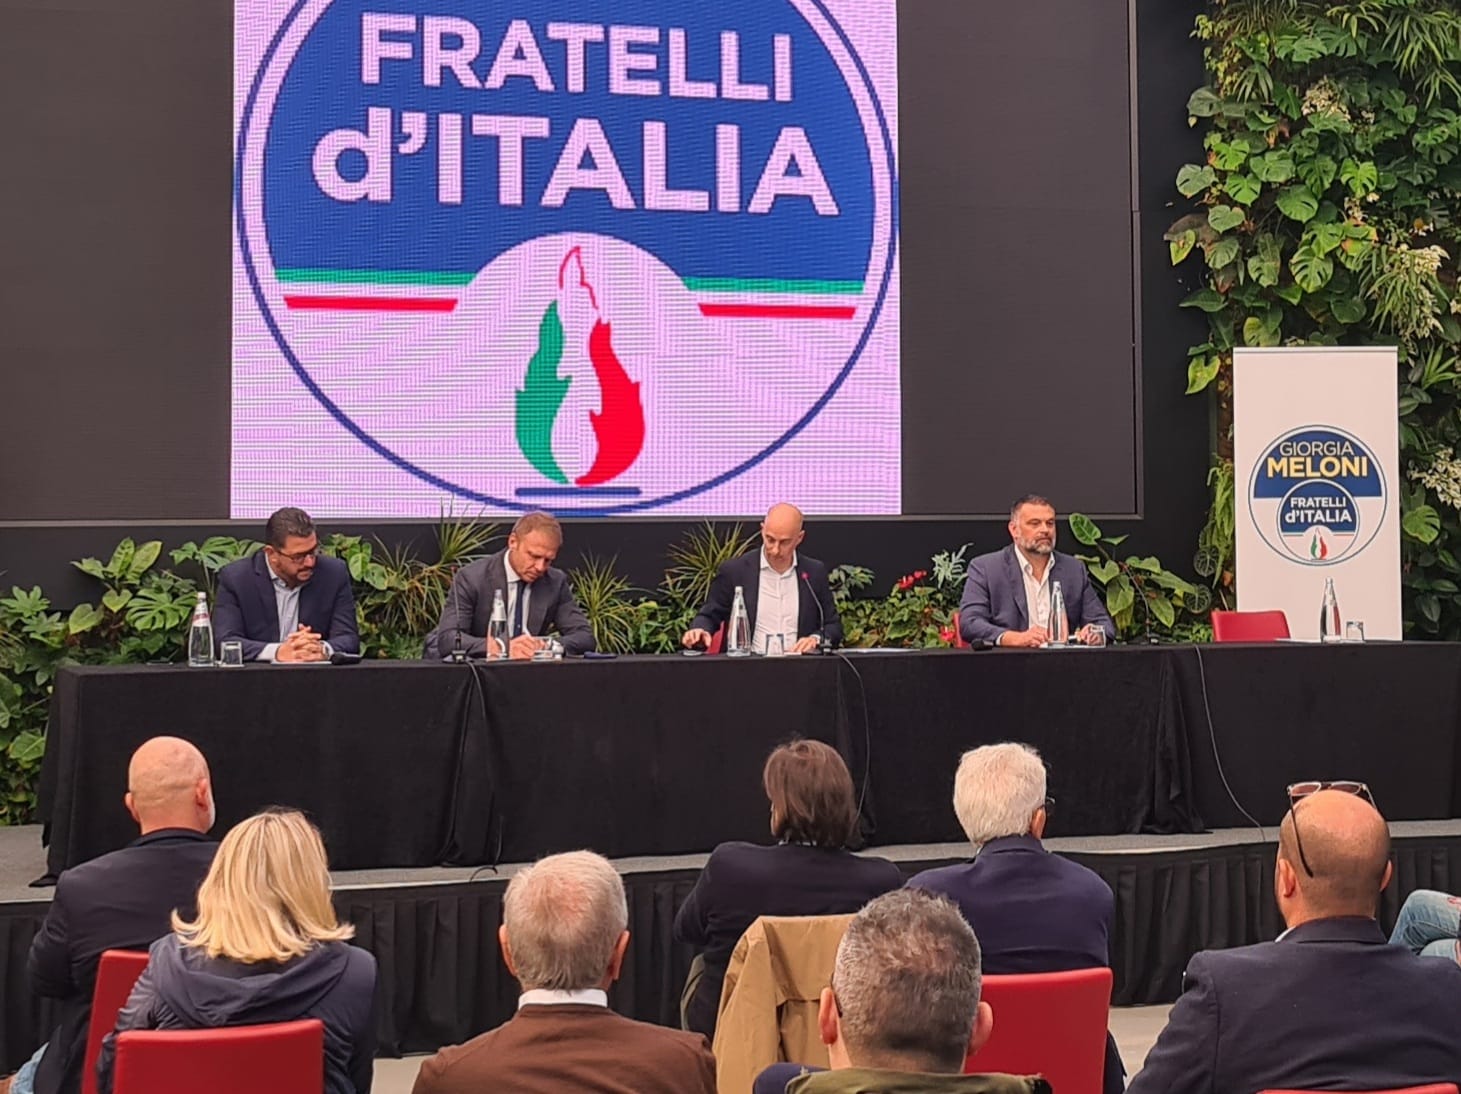 Sboarina candidato sindaco. L’assemblea dei dirigenti ed eletti di Fratelli d’Italia non ha dubbi